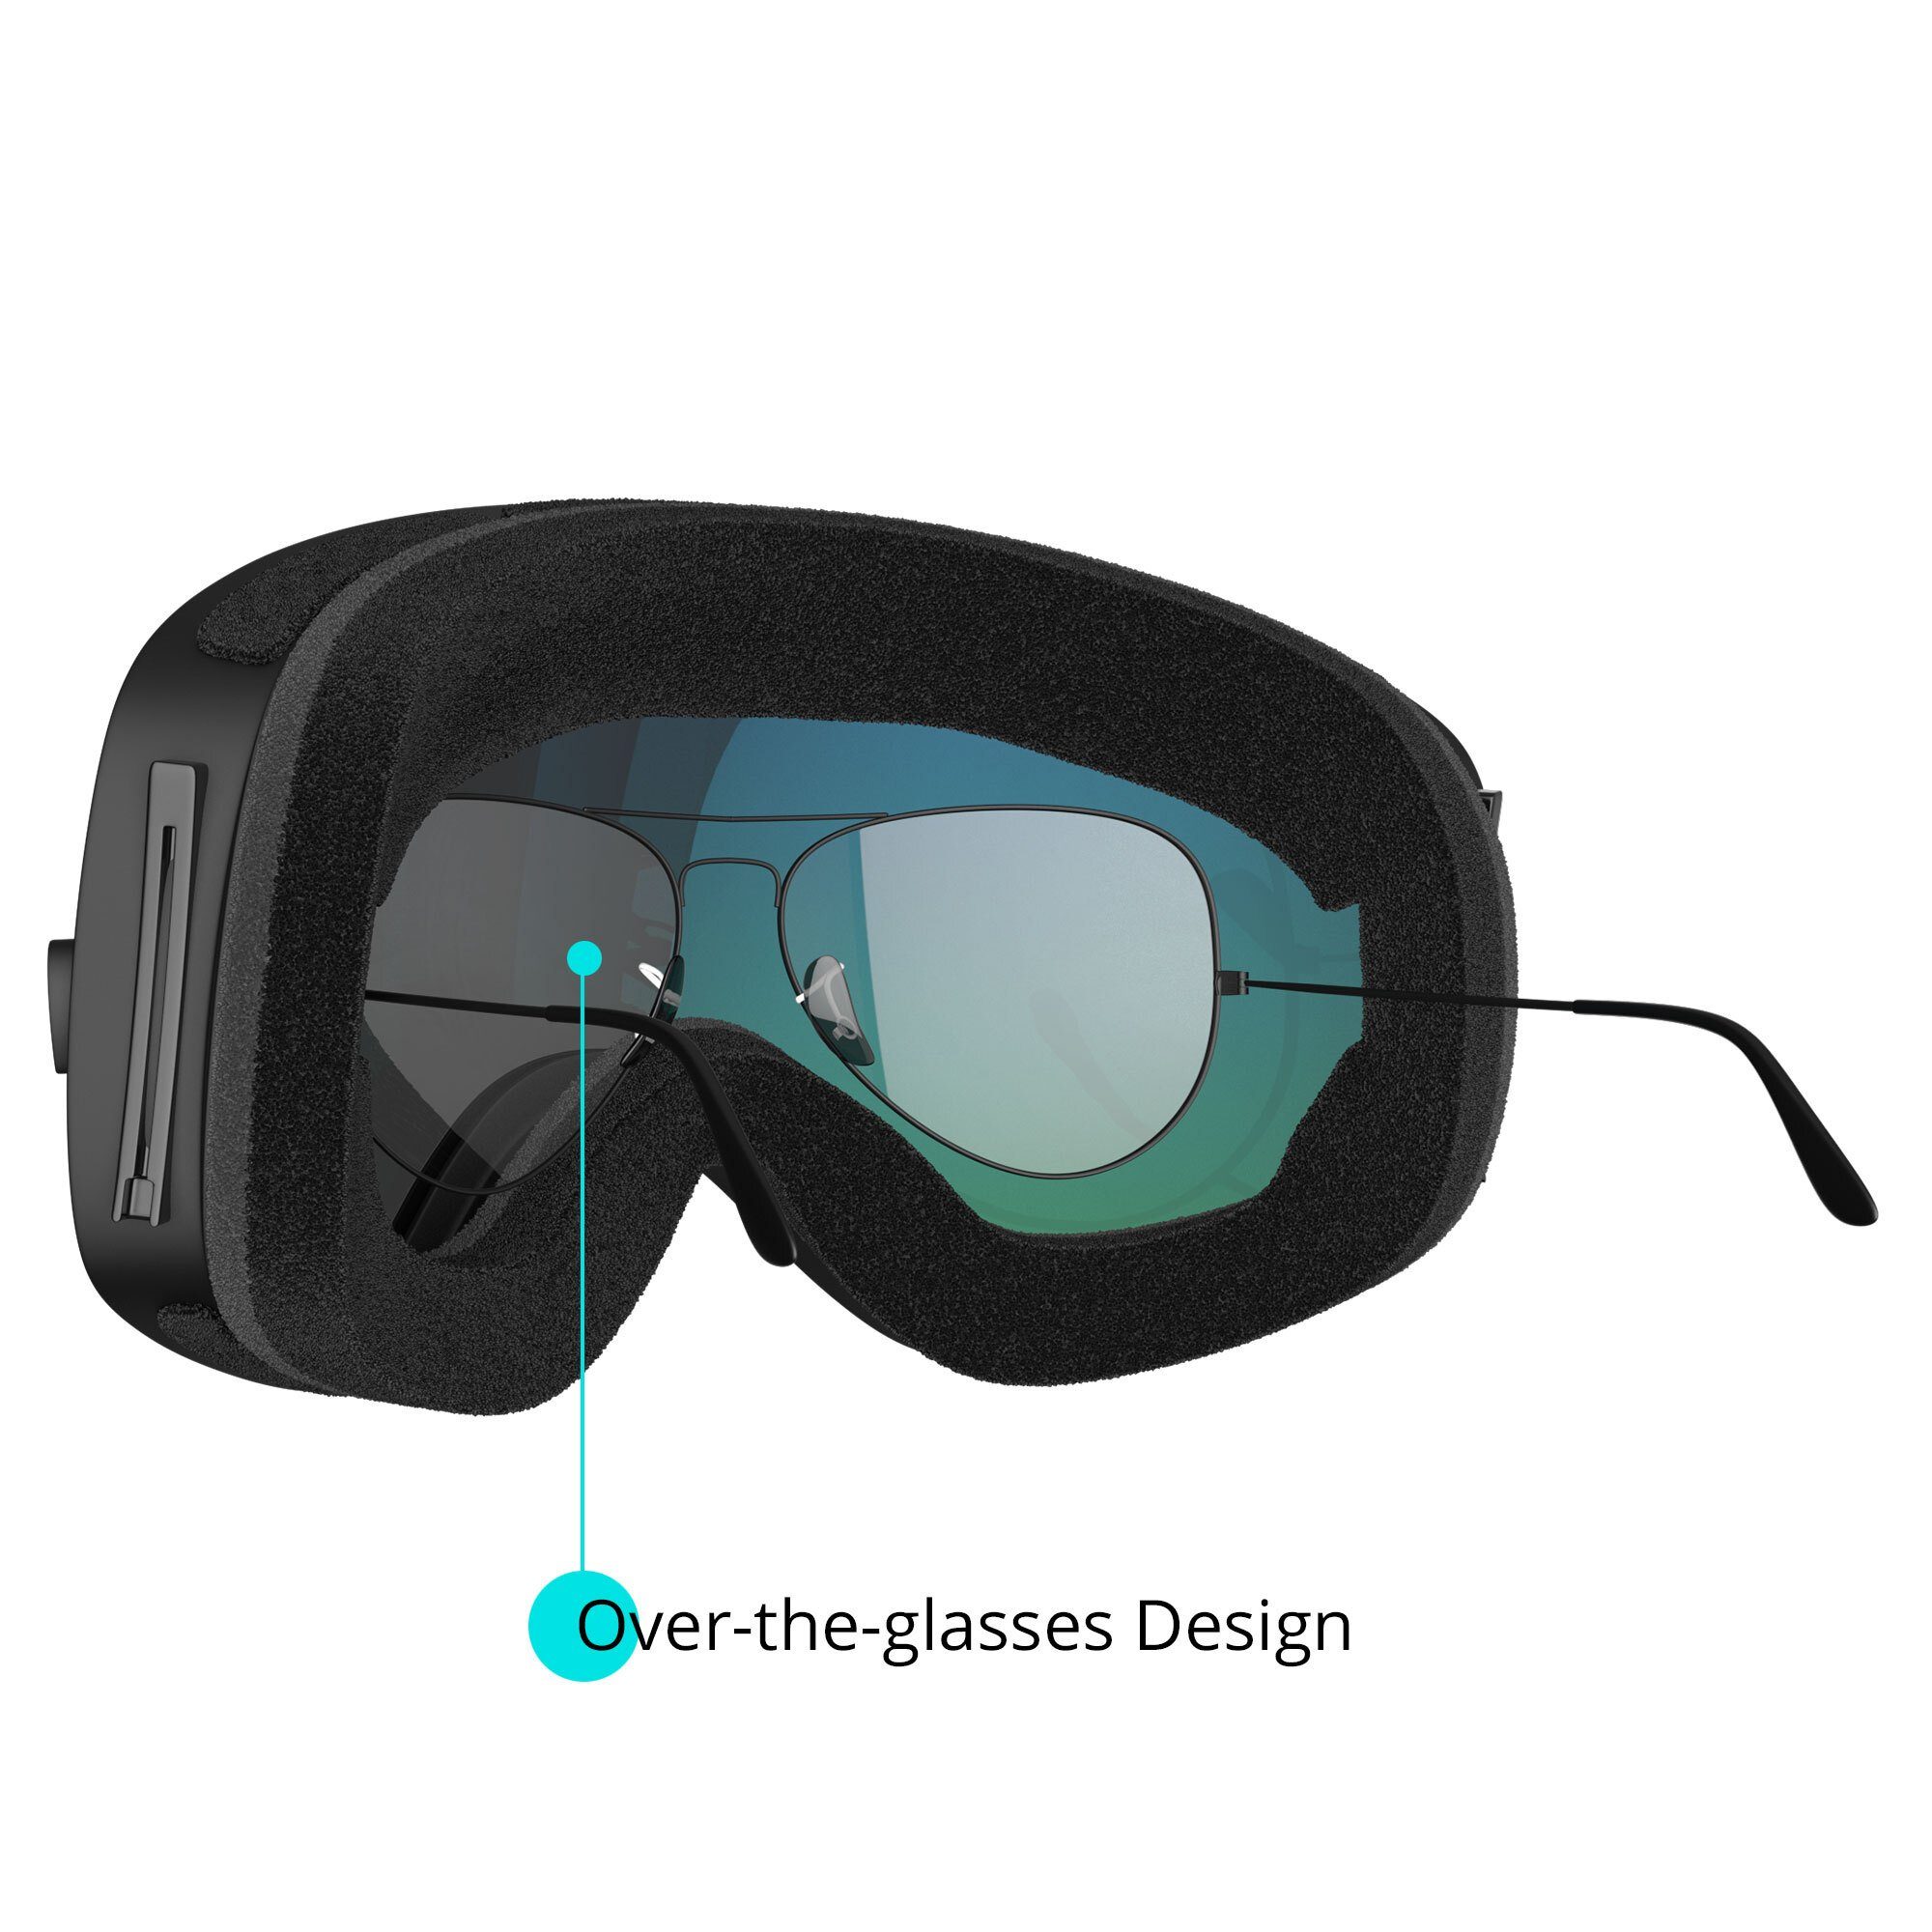 und Jugendliche Snowboardbrille Erwachsene Skibrille für Premium-Ski- und YEAZ XTRM-SUMMIT,